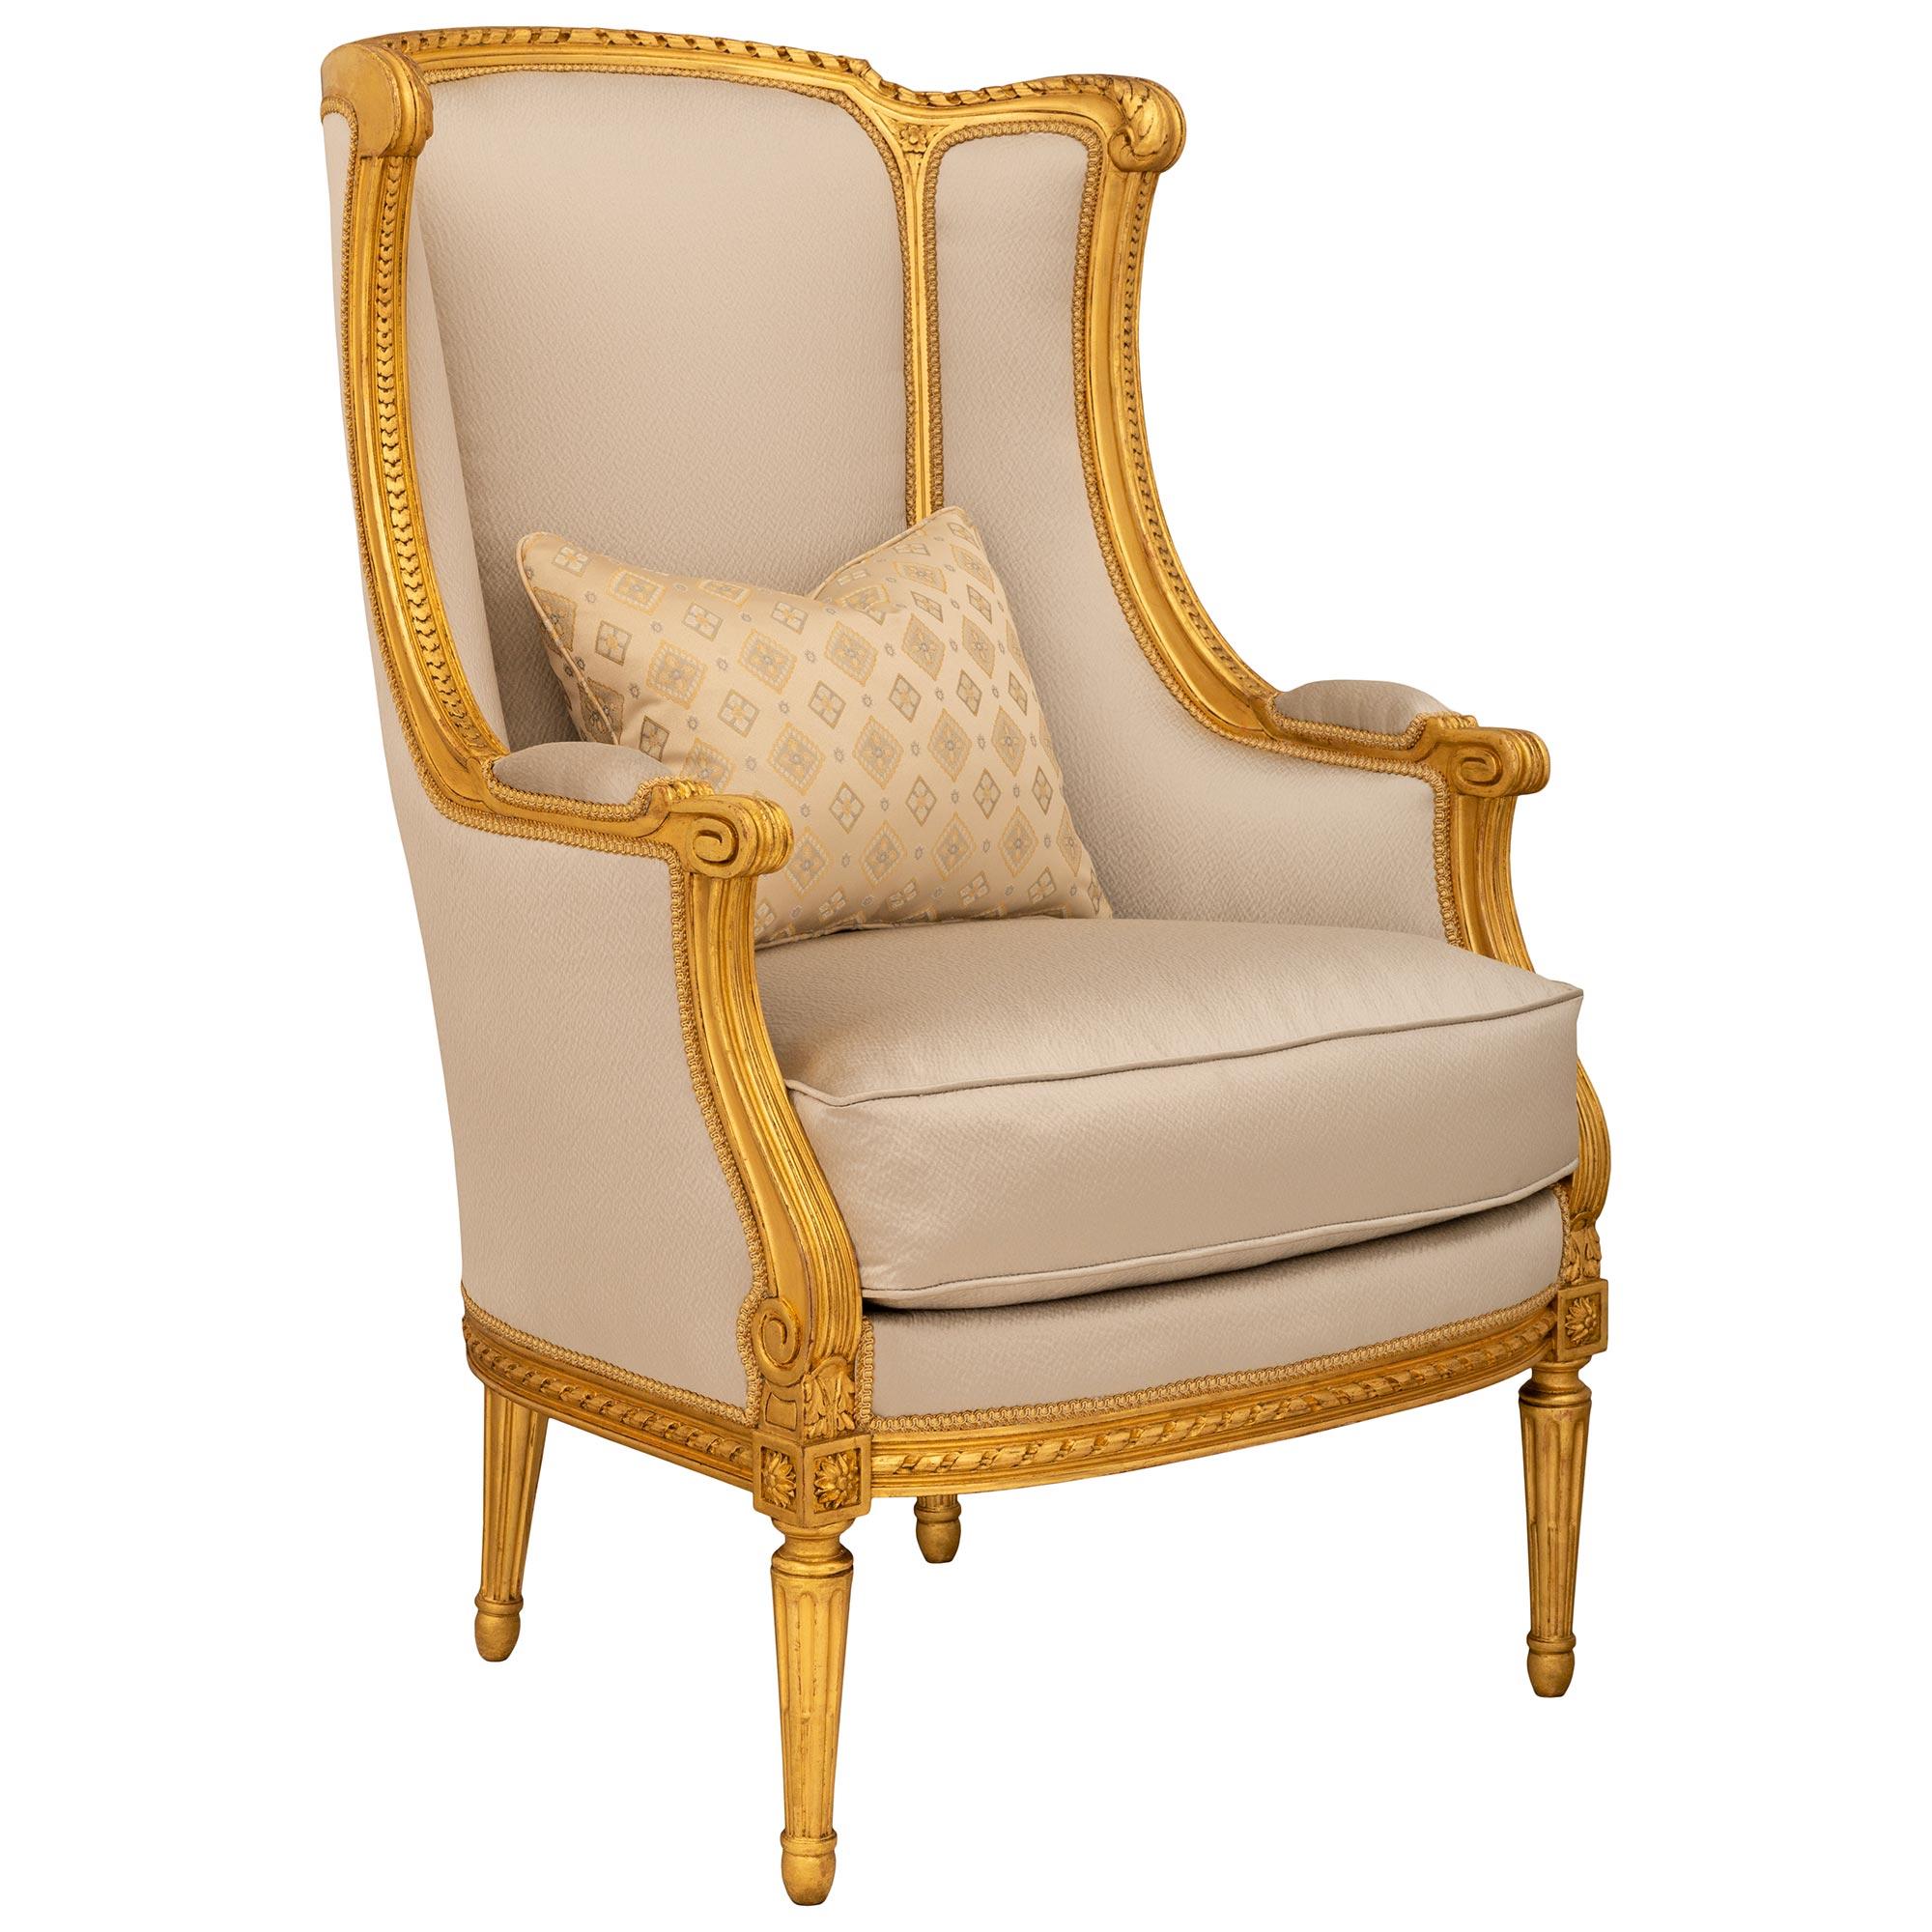 Paire de fauteuils Bergère en bois doré de style Louis XVI du XIXe siècle, d'une grande élégance et d'une grande qualité. Chaque chaise très élégante repose sur quatre pieds circulaires cannelés et fuselés, sur des supports ovales et sur des bandes